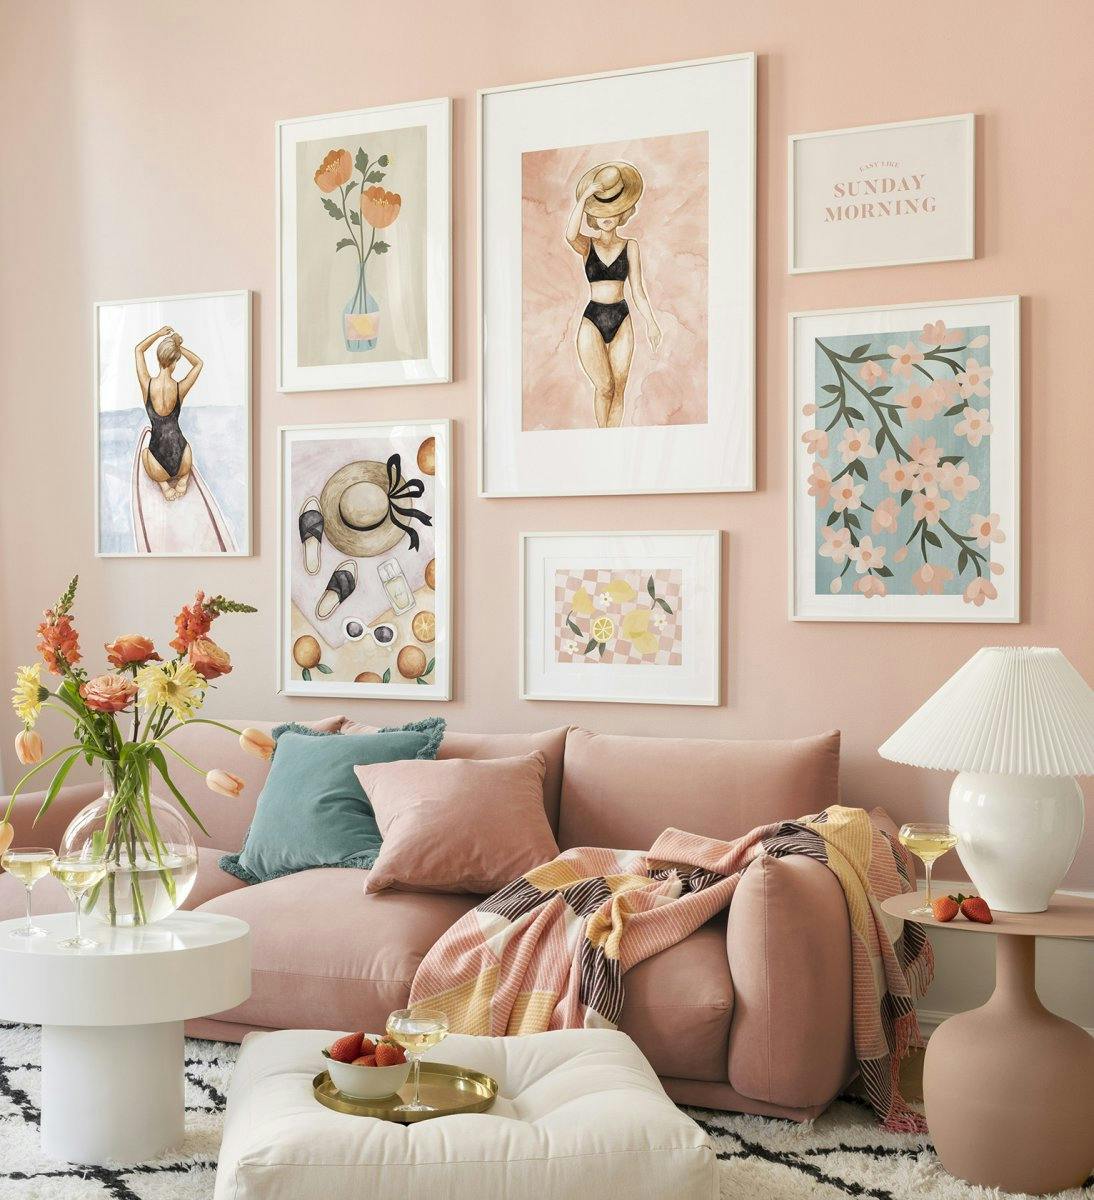 Barevná stěna galerie s květinovými tisky a ilustracemi v růžové barvě s bílými rámečky do obývacího pokoje